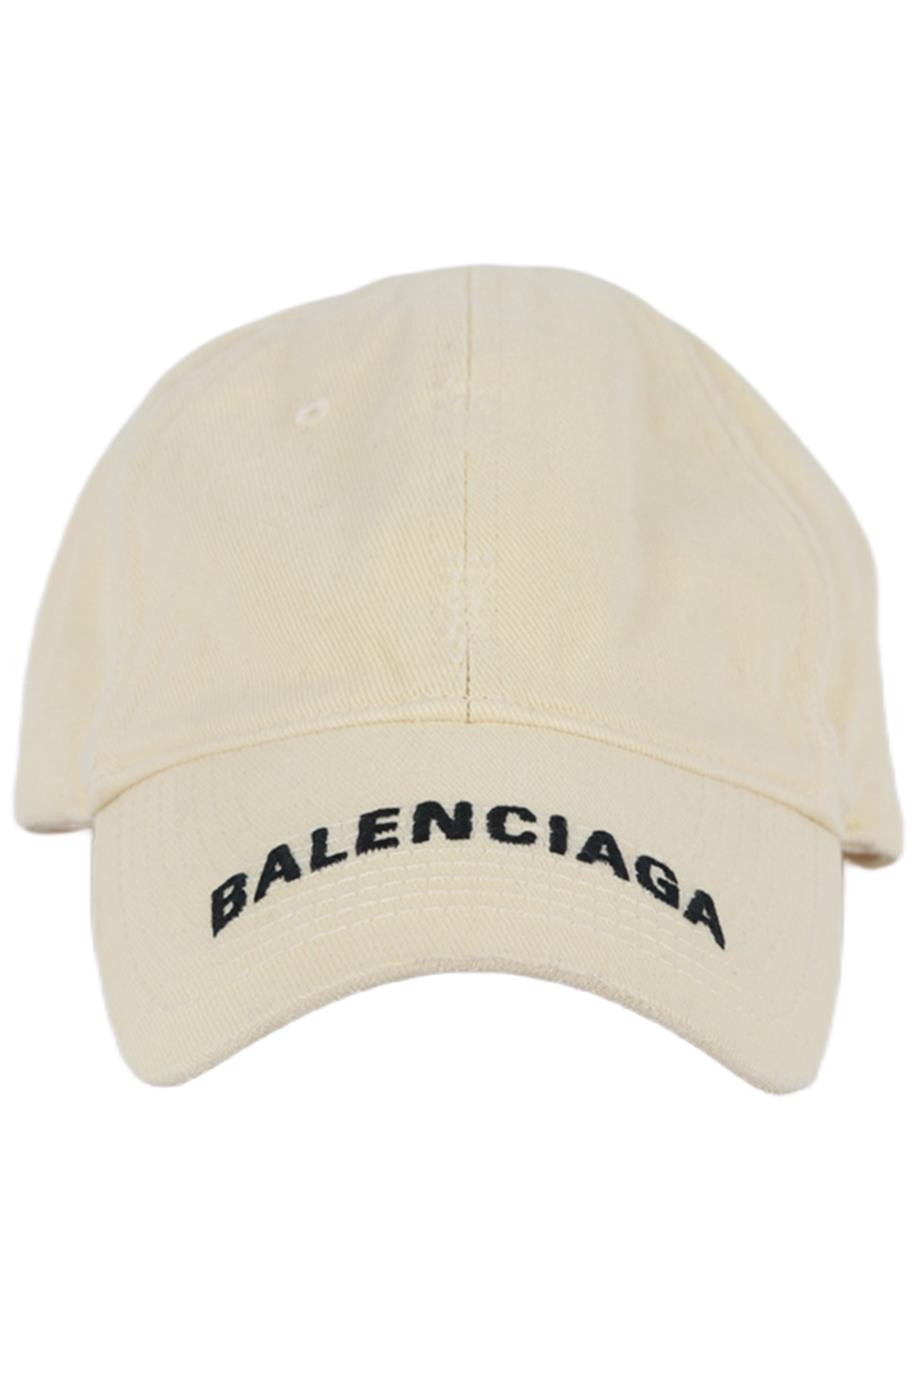 Balenciaga Grey Logo Embroidered Cap  Boutique LUCS